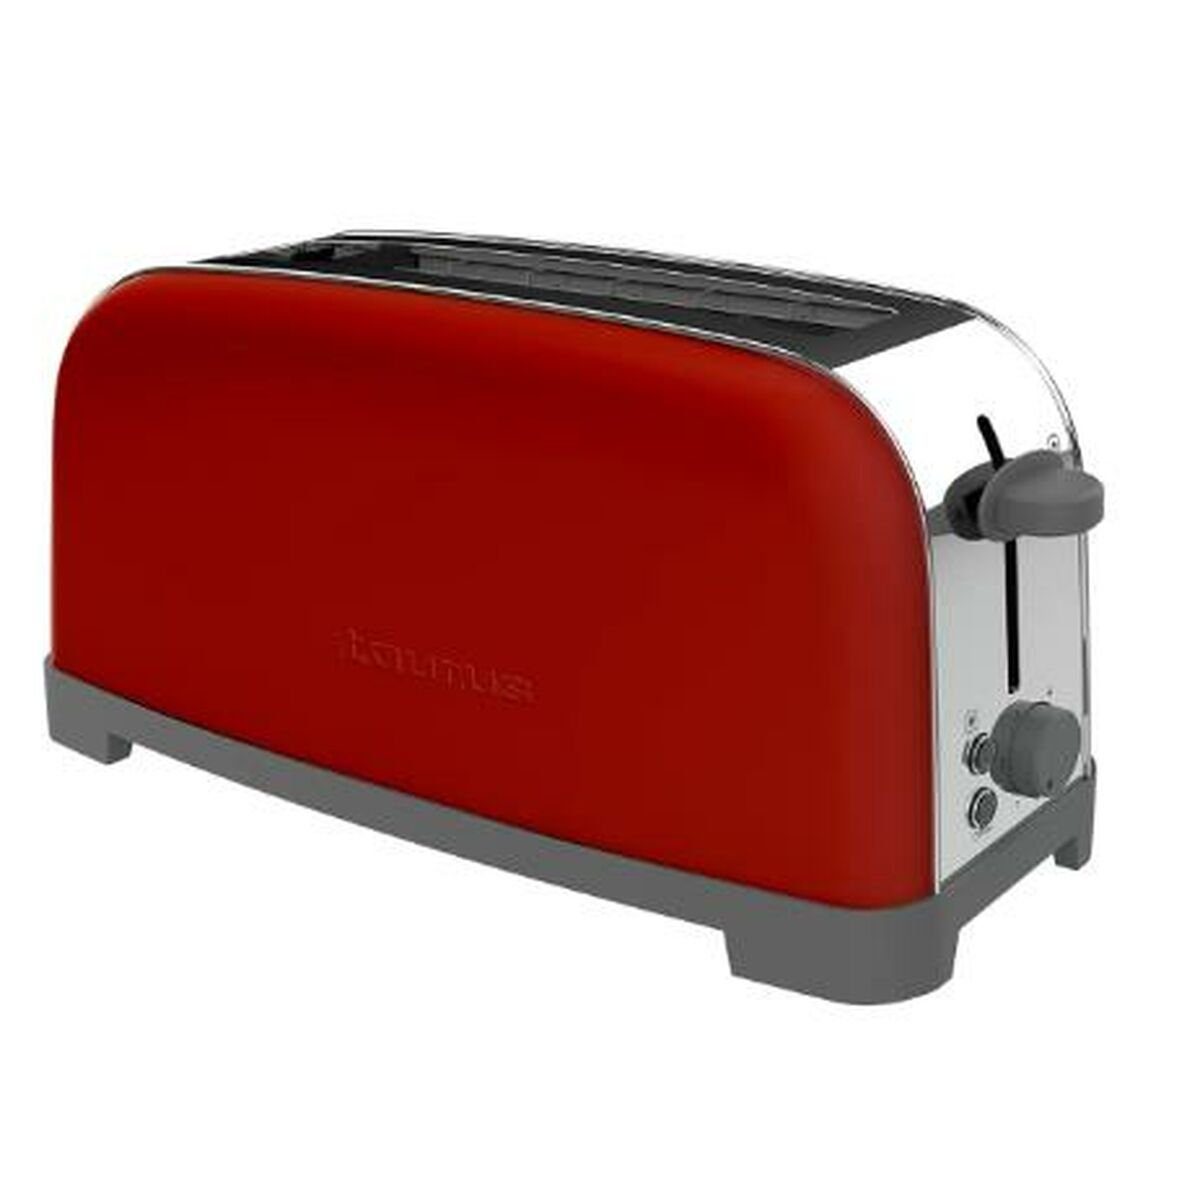 Taurus Toaster Toaster Taurus VINTAGE SINGLE